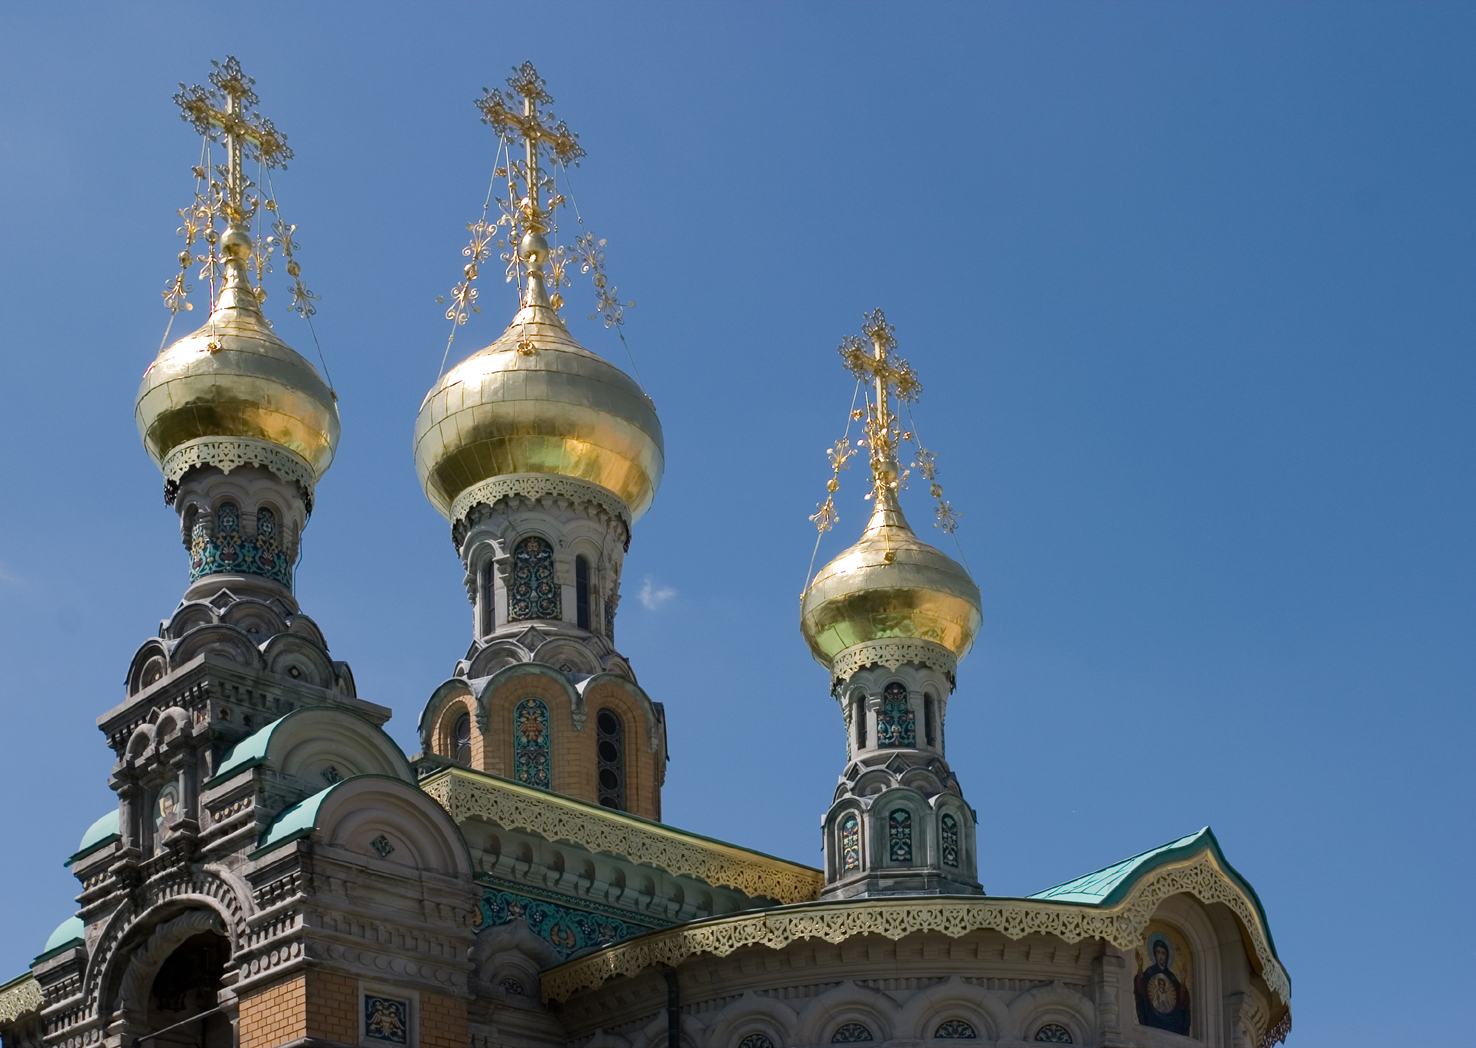 Die Russische Kapelle:
